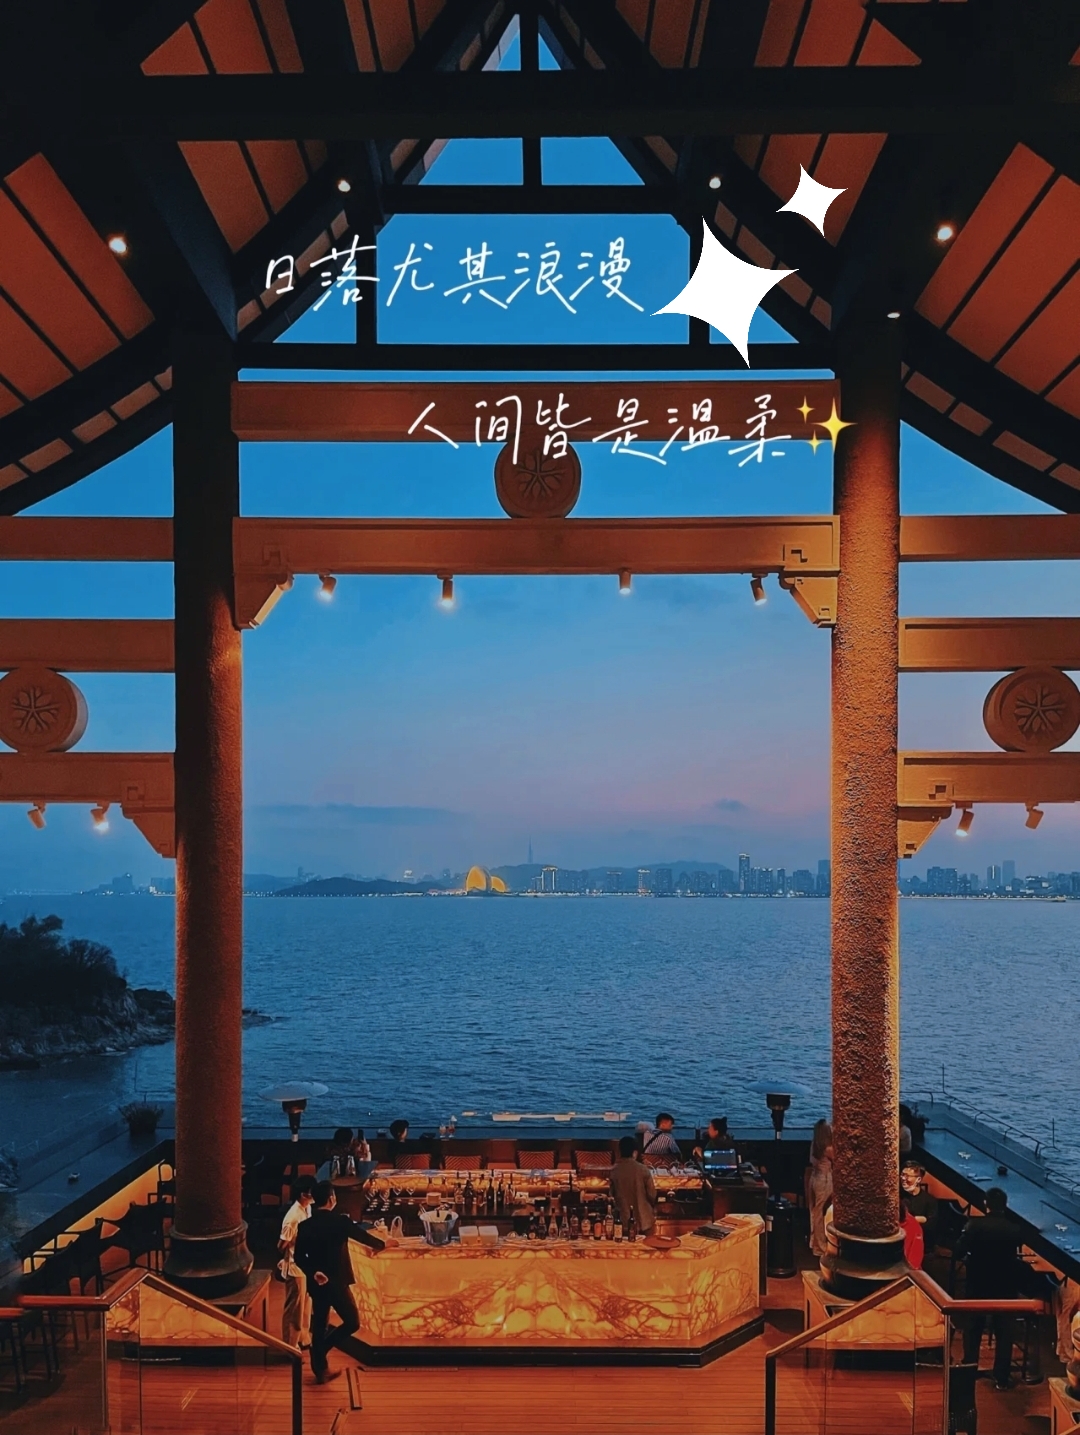 我愿称之为广东最美の环海酒店🔥🍃 |  270°绝美海景❗